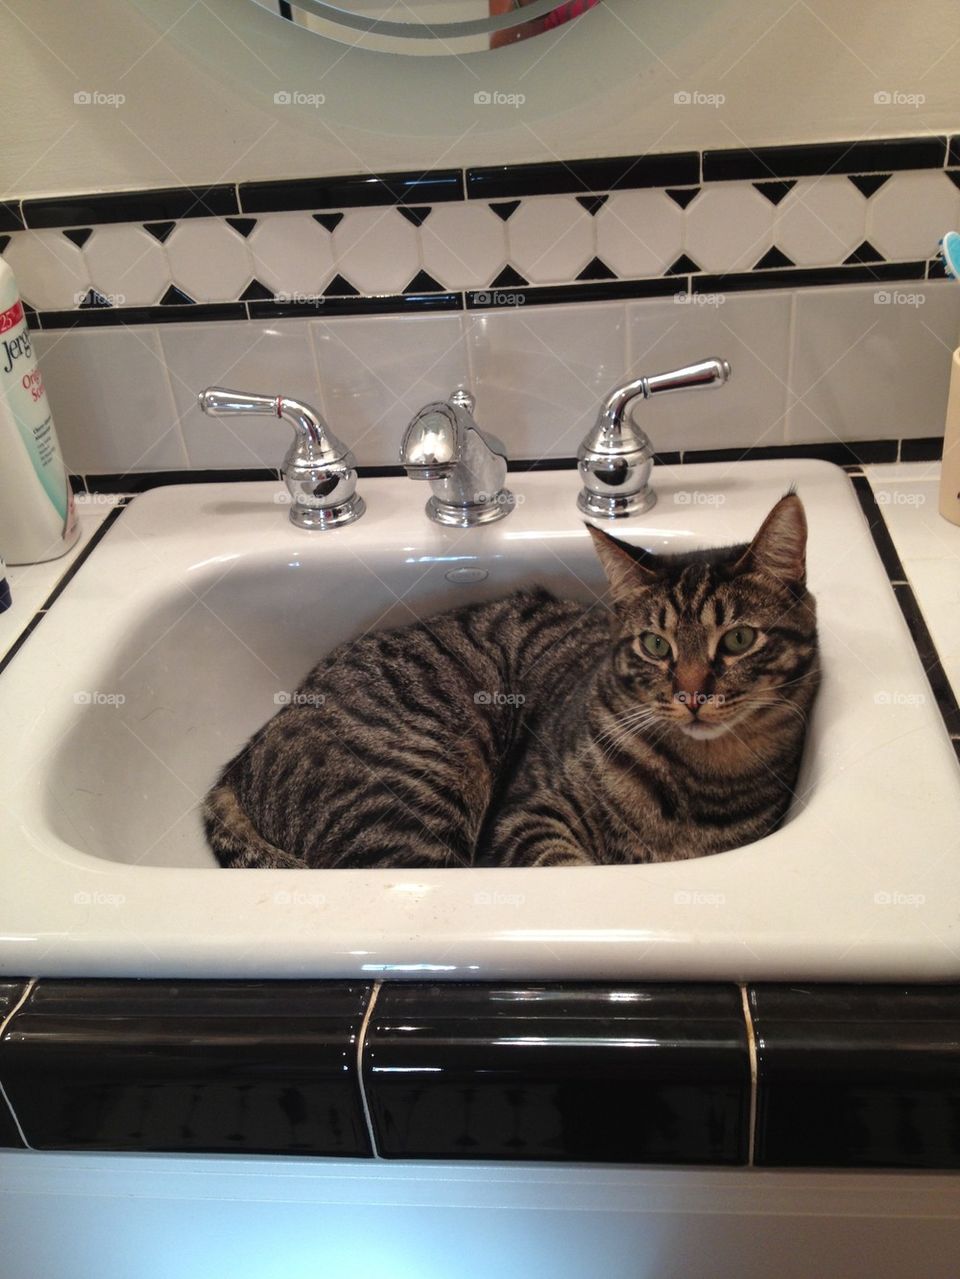 Finn in sink